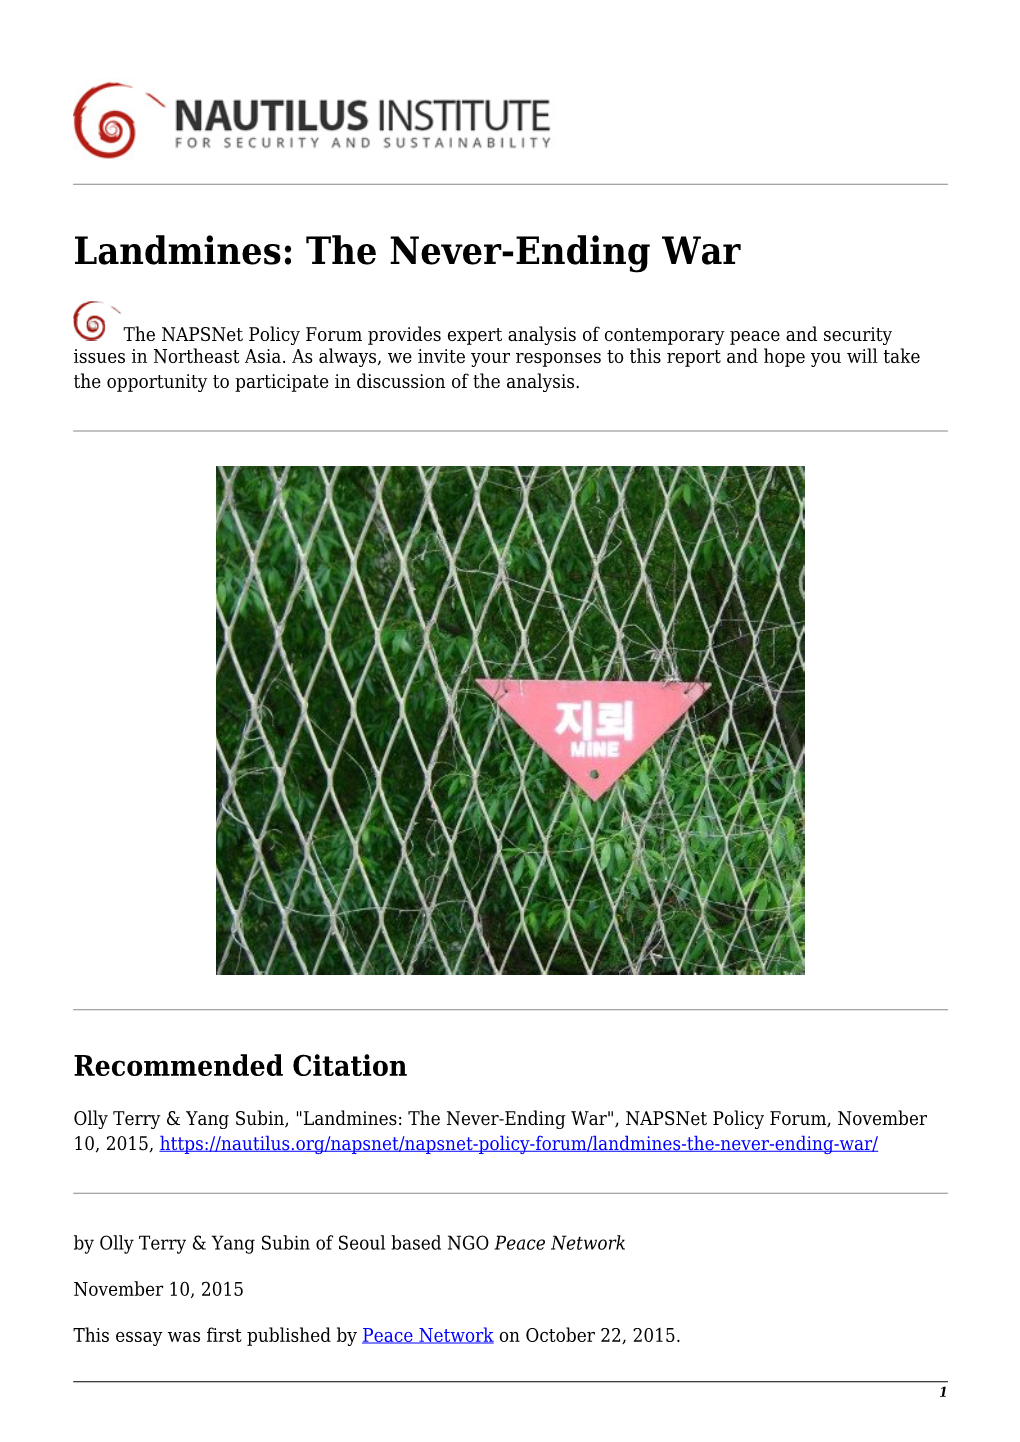 Landmines: the Never-Ending War